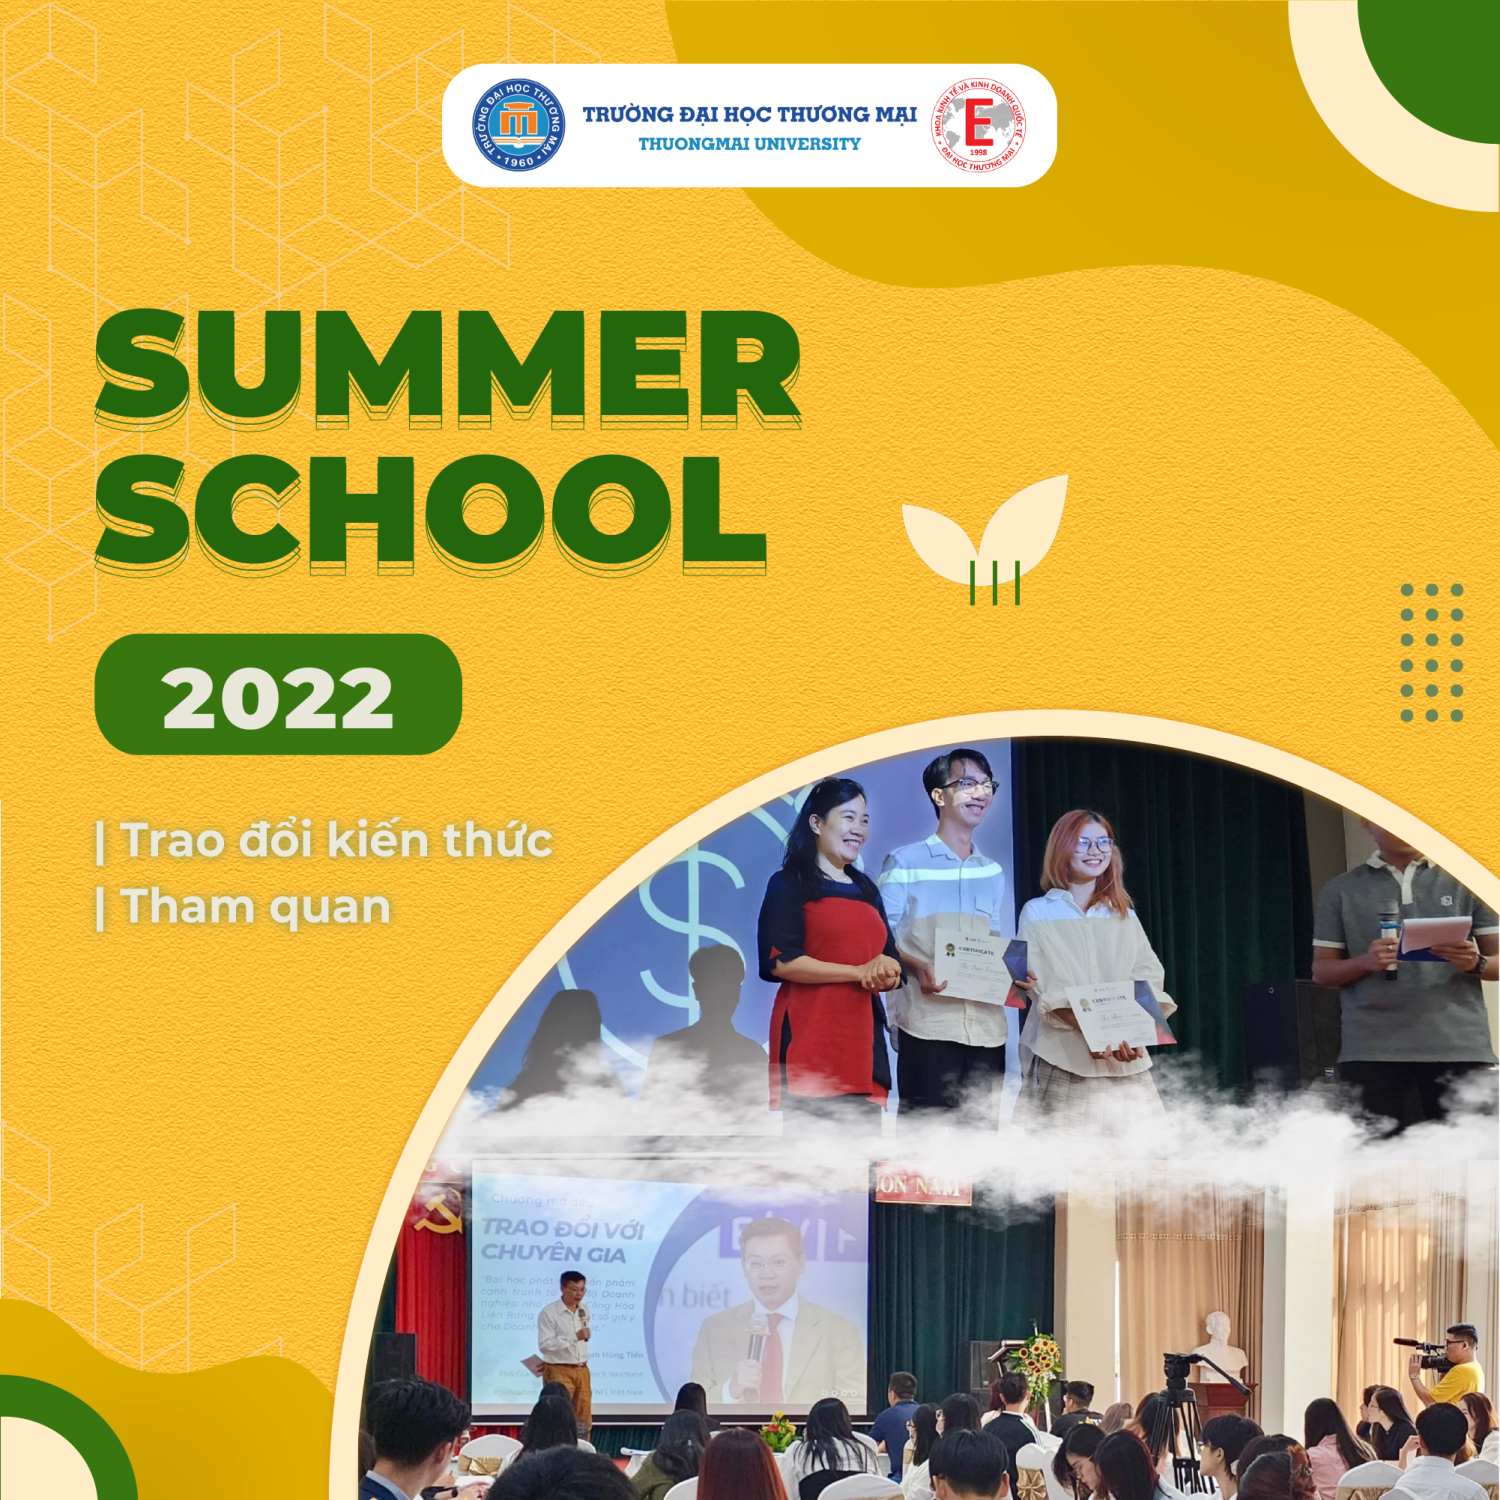 CUỘC HÀNH TRÌNH THÚ VỊ - SUMMER SCHOOL 2022